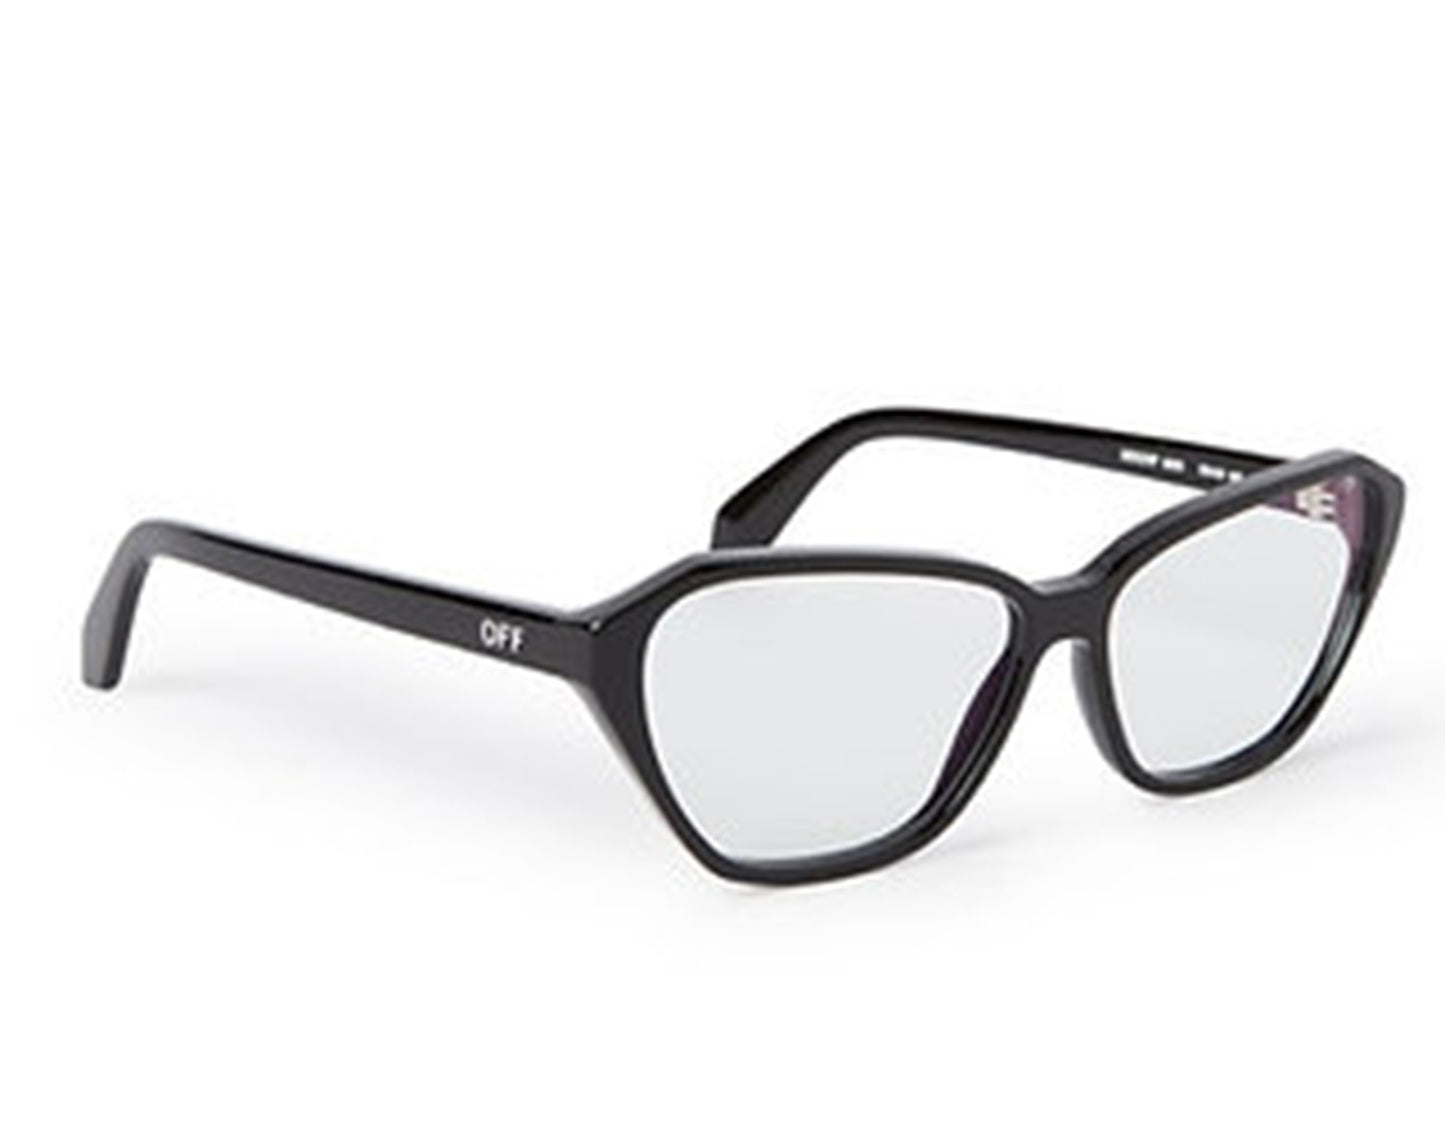 Off-White Style 39 Black Blue Block Light 59mm New Eyeglasses